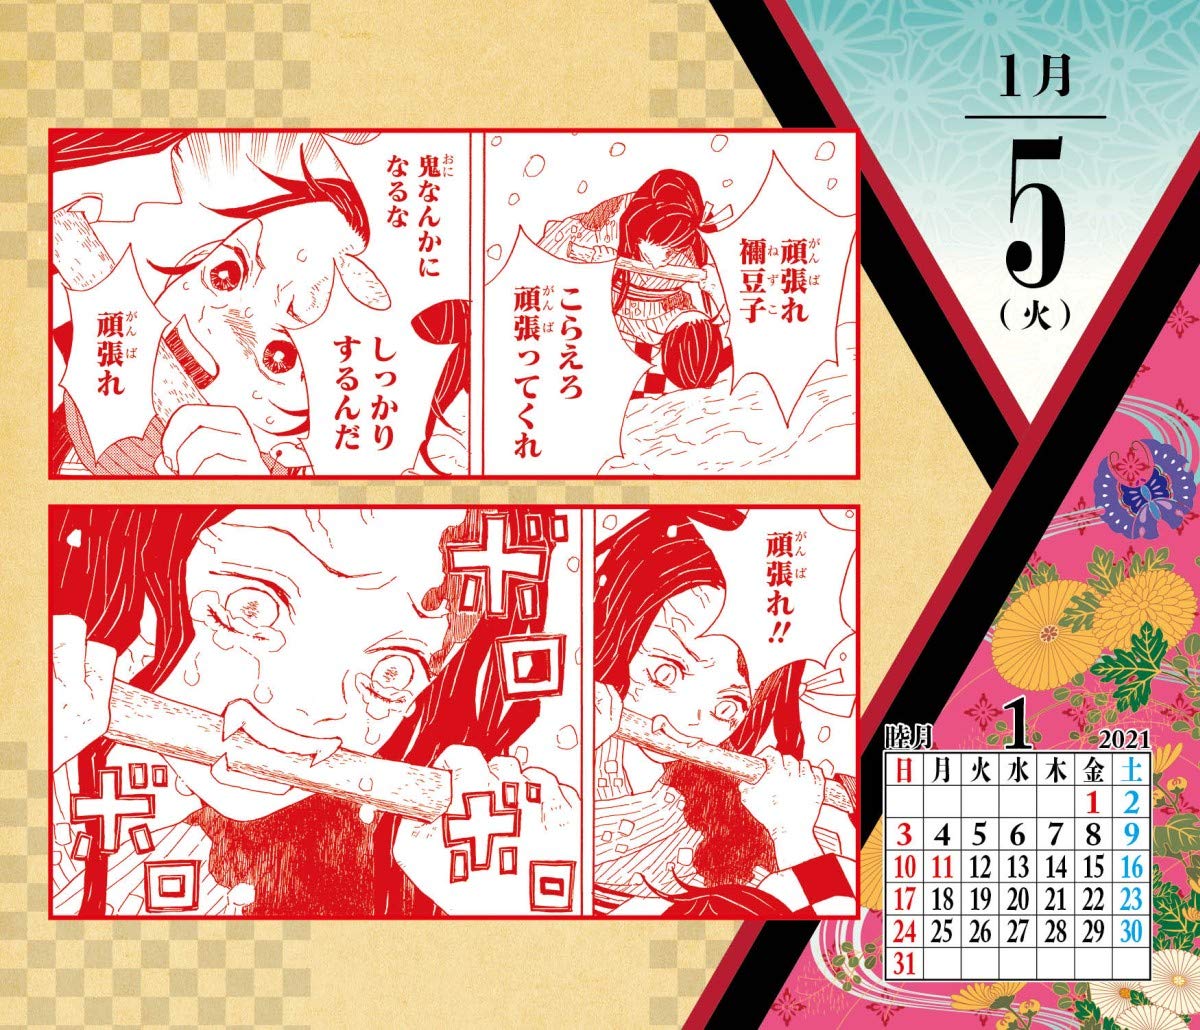 鬼滅の刃『コミックカレンダー2021 特製缶入り 日めくりカレンダー』グッズ-003